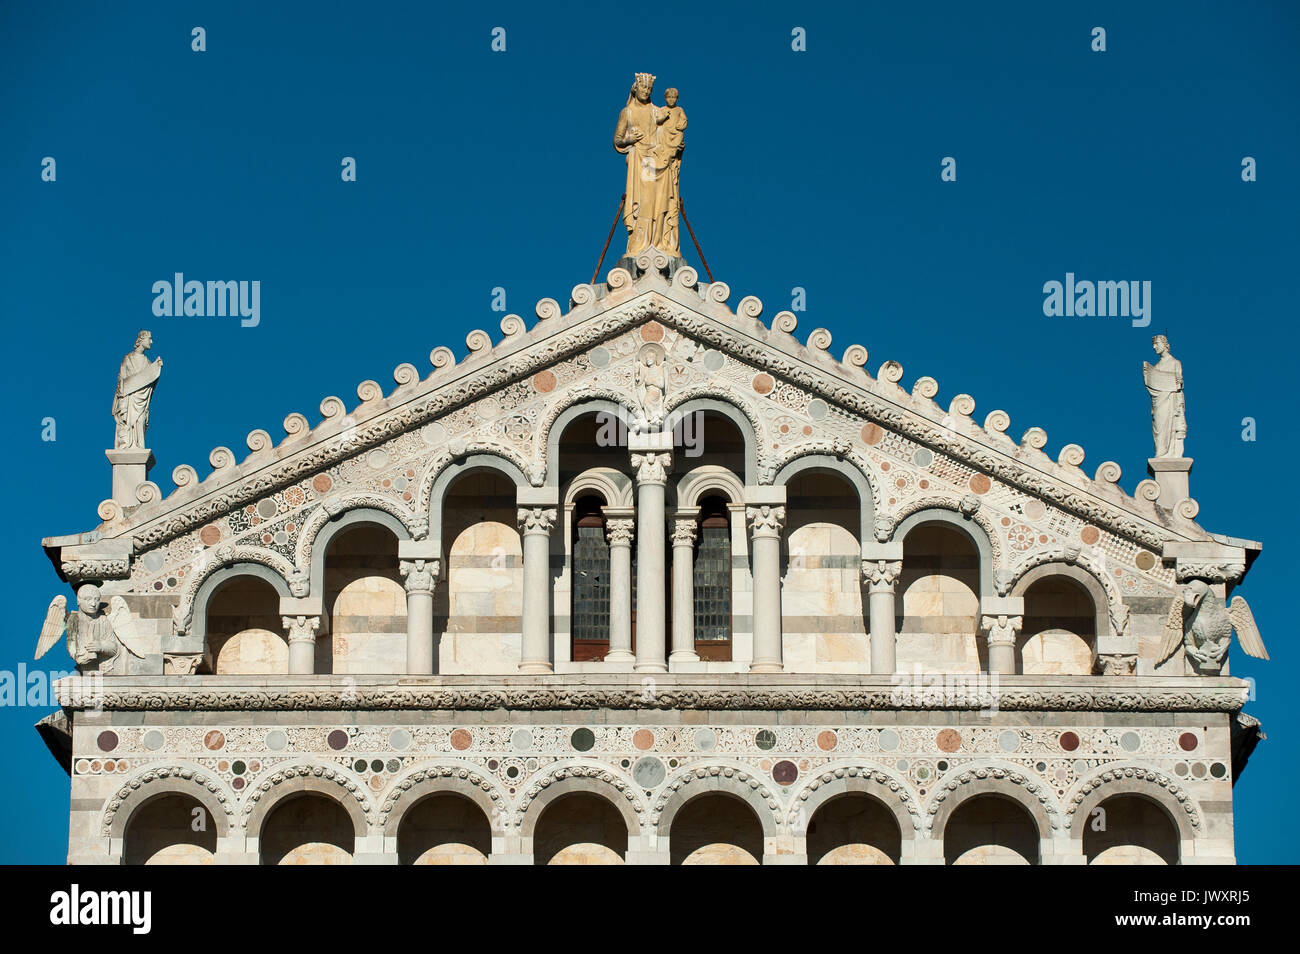 Romanesque Cattedrale Metropolitana Primaziale di Santa Maria Assunta (Pisa Cathedral) on Campo dei Miracoli listed World Heritage by UNESCO in Pisa,  Stock Photo